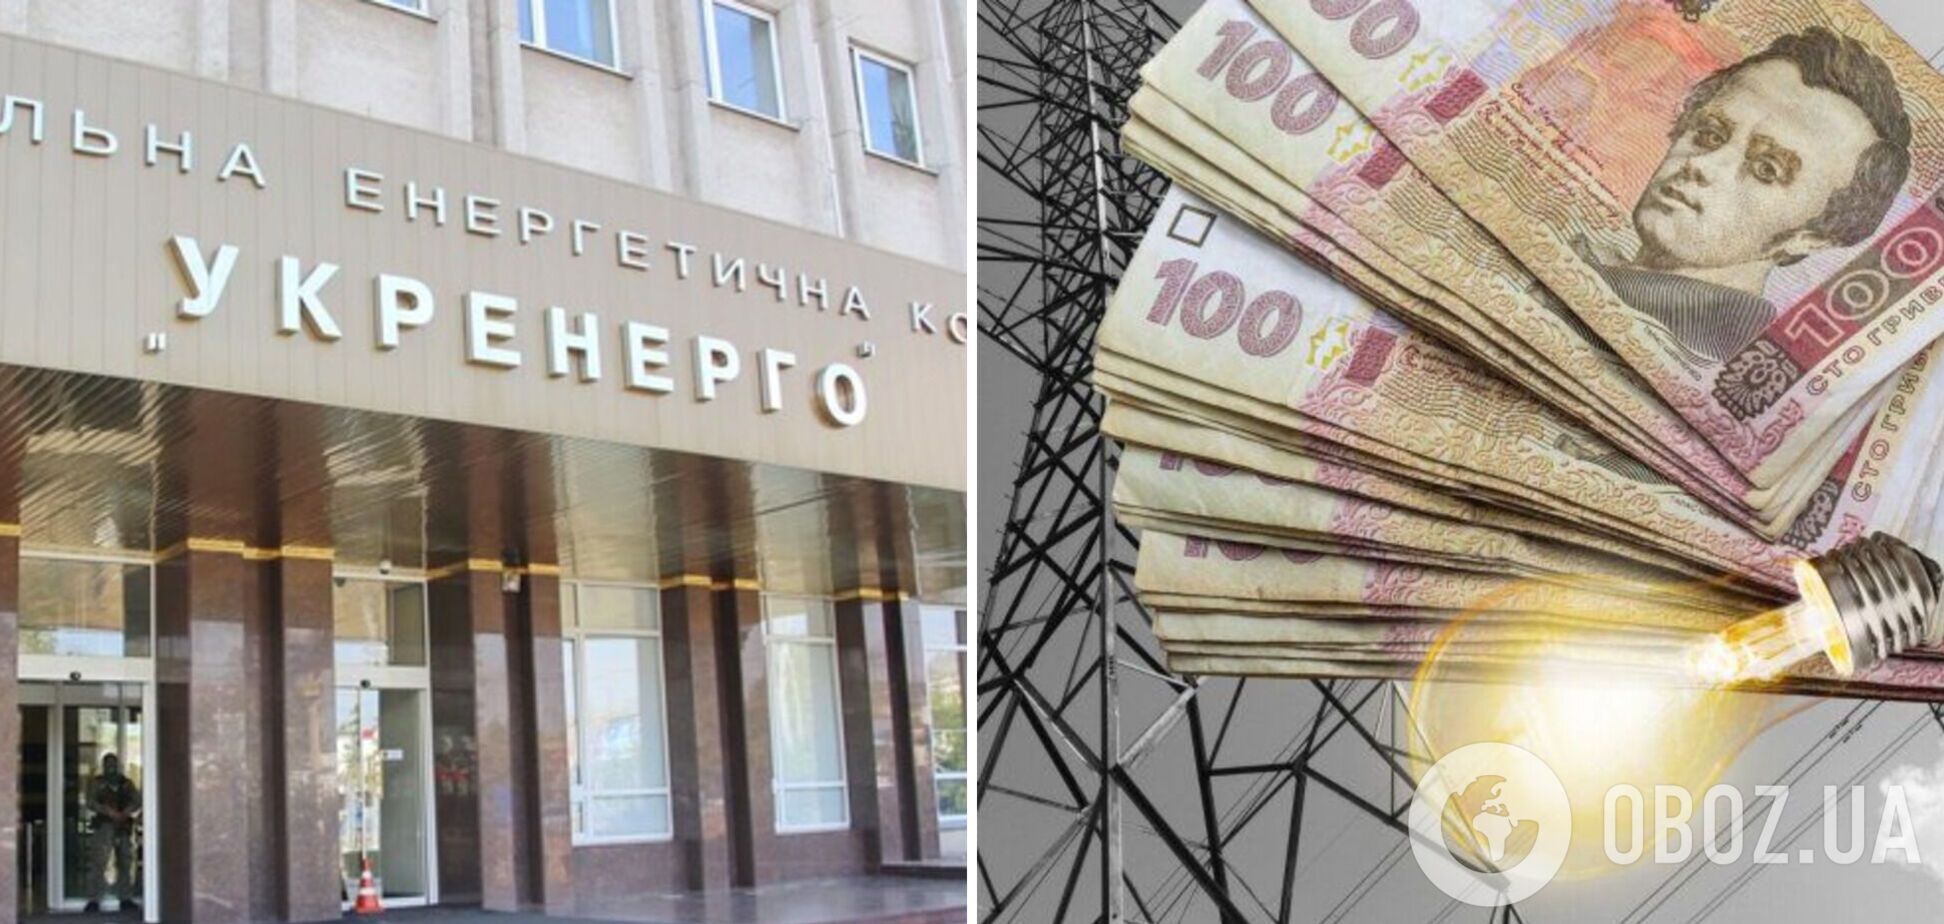 'Укренерго' недоплатили 30 млрд грн підприємства, які заборонено відключати за борги, – Кудрицький